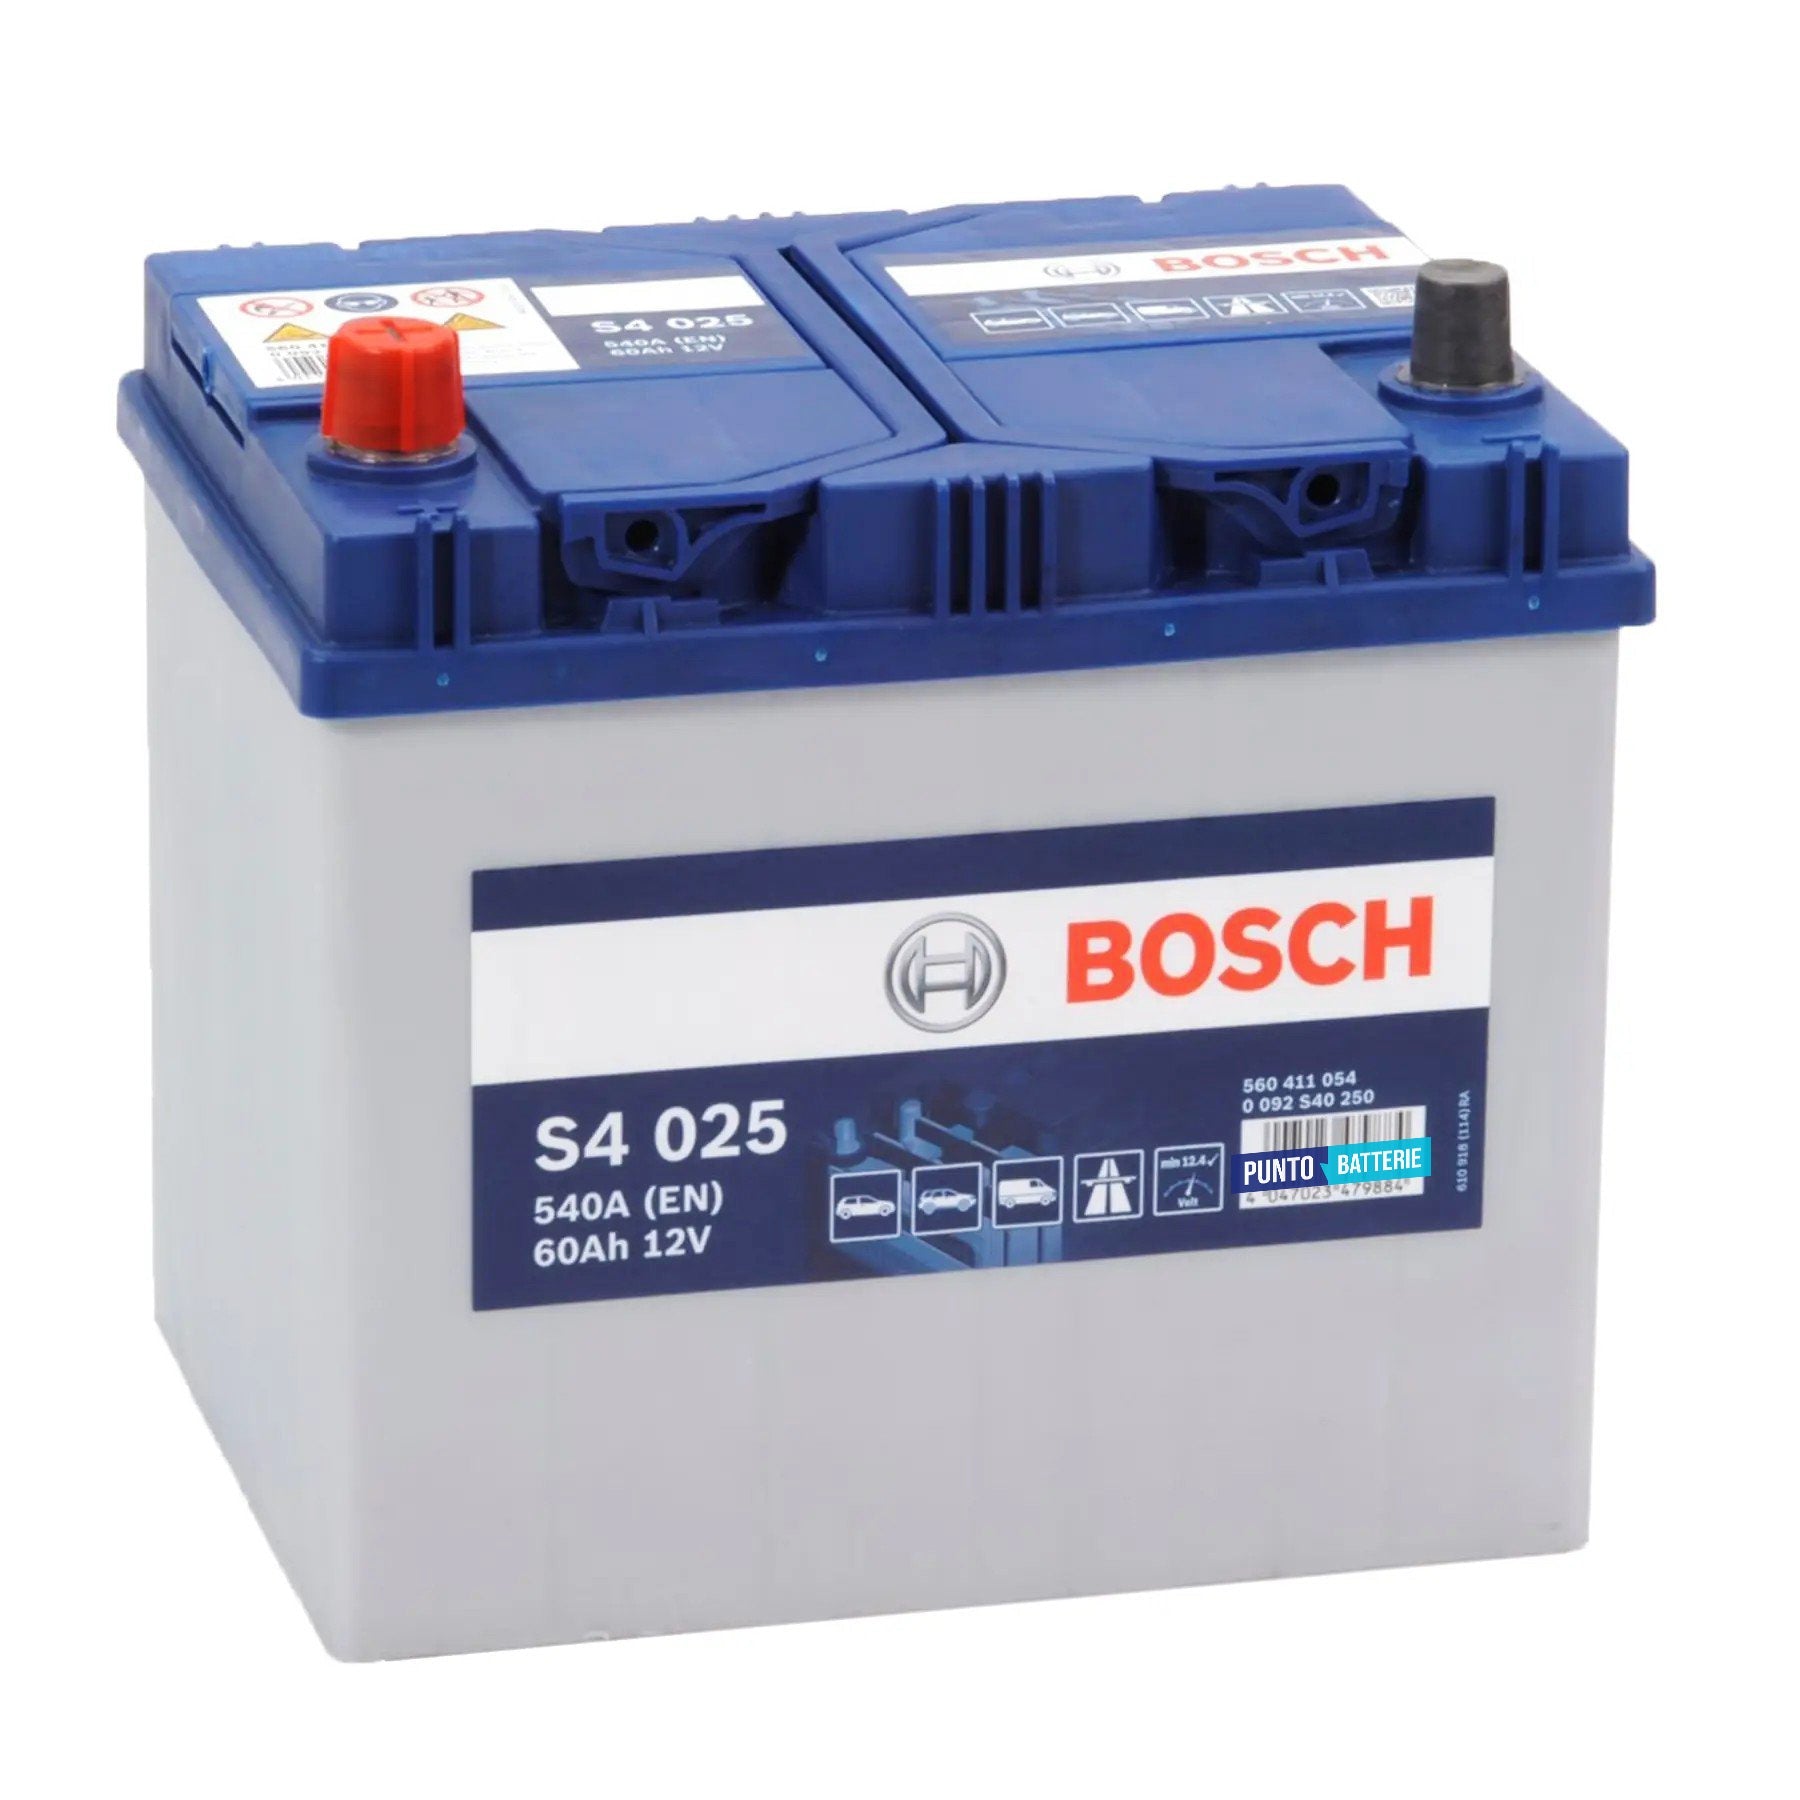 Batteria originale Bosch S4 S4 025, dimensioni 232 x 173 x 225, polo positivo a sinistra, 12 volt, 60 amperora, 540 ampere. Batteria per auto e veicoli leggeri.